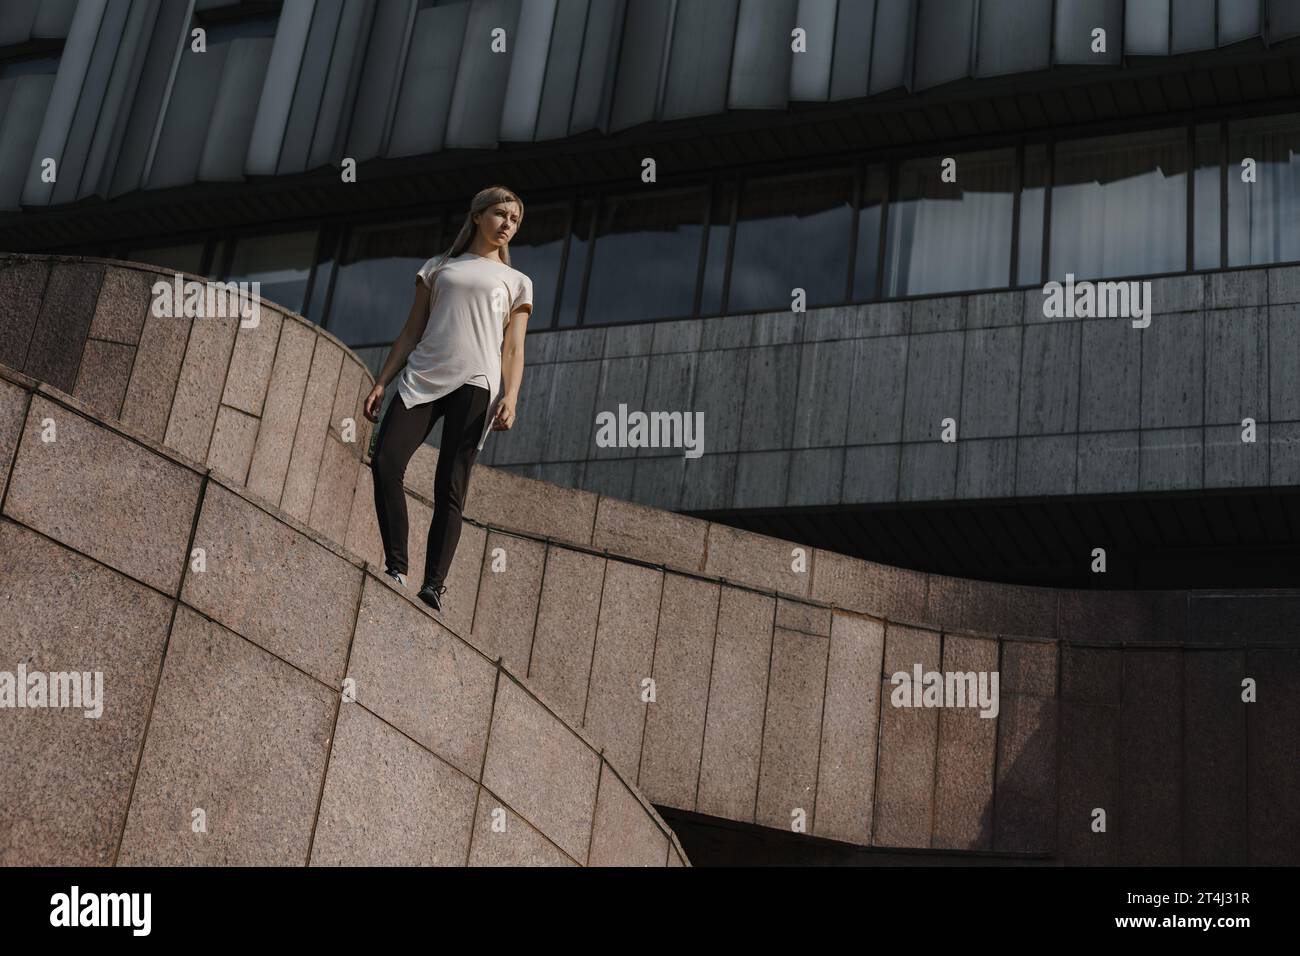 Ritratto di una giovane donna sportiva del parkour. Atleta freeruning in piedi sul tetto. Foto Stock